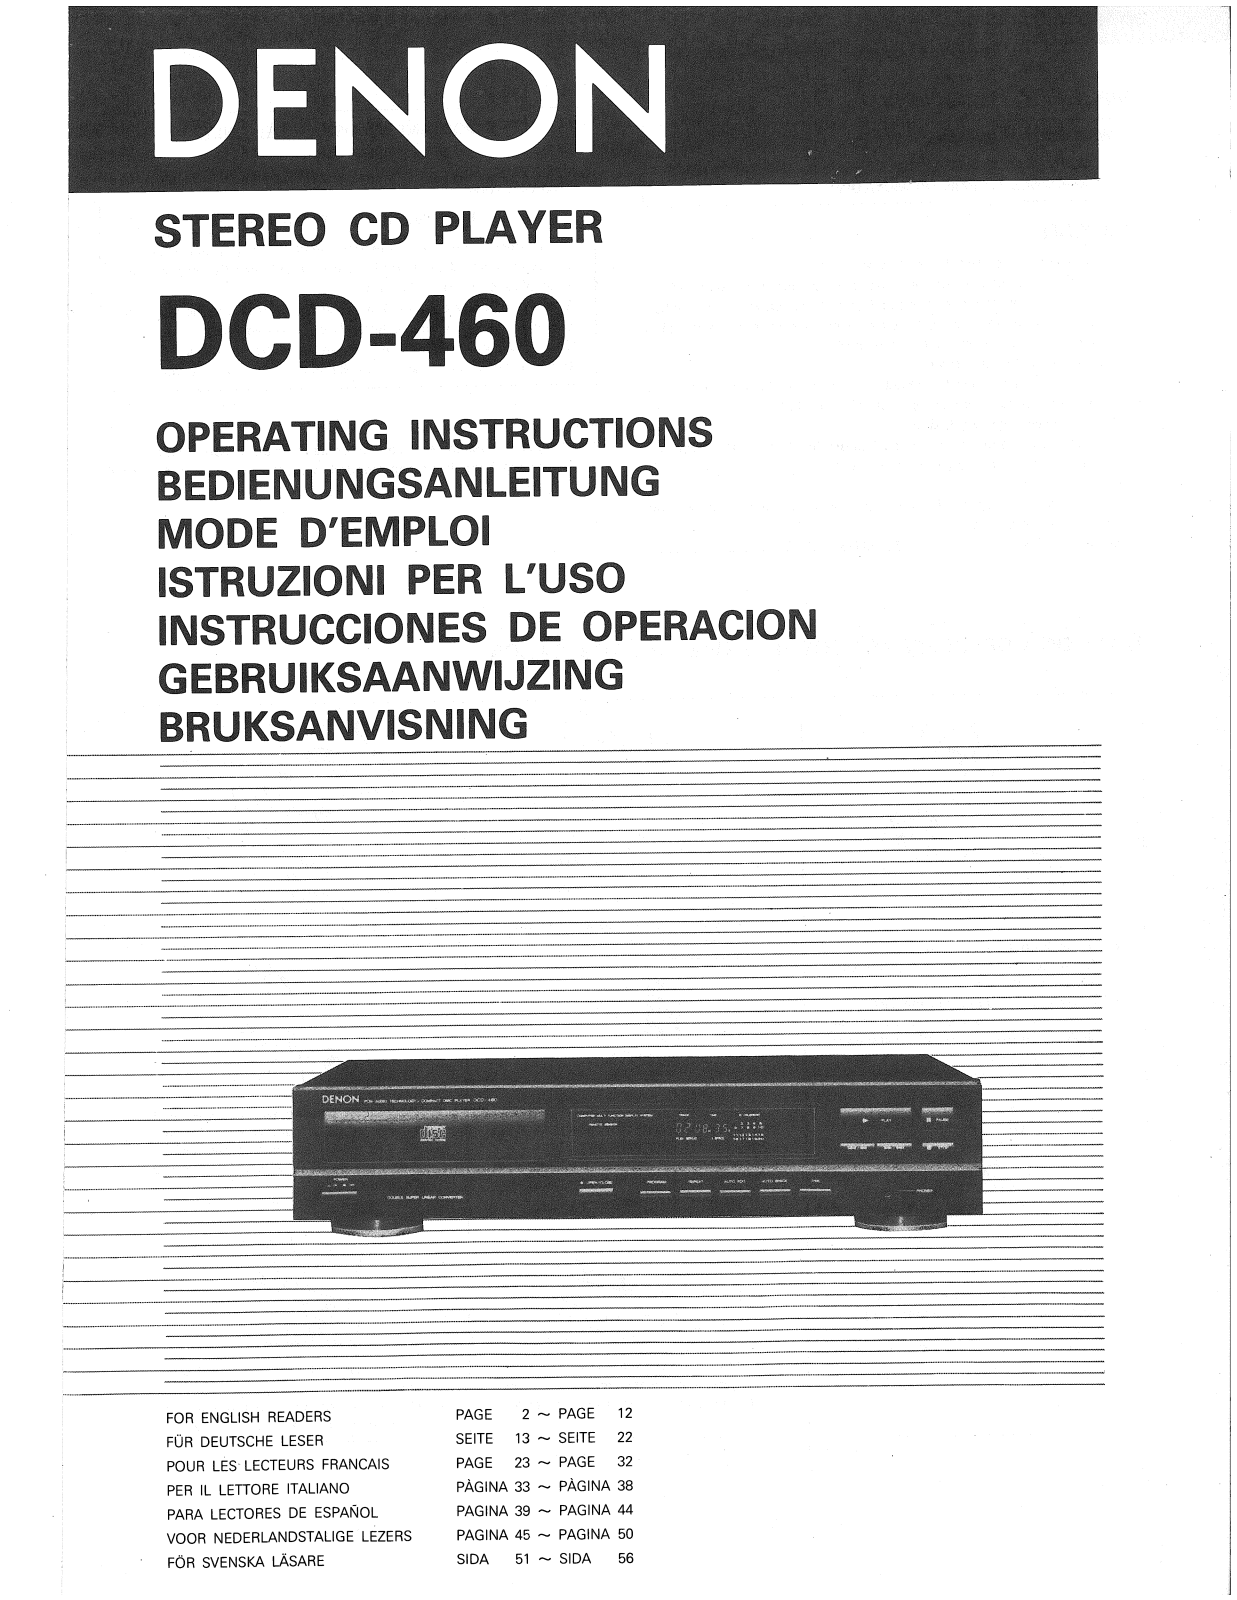 Denon DCD-460 Owner's Manual